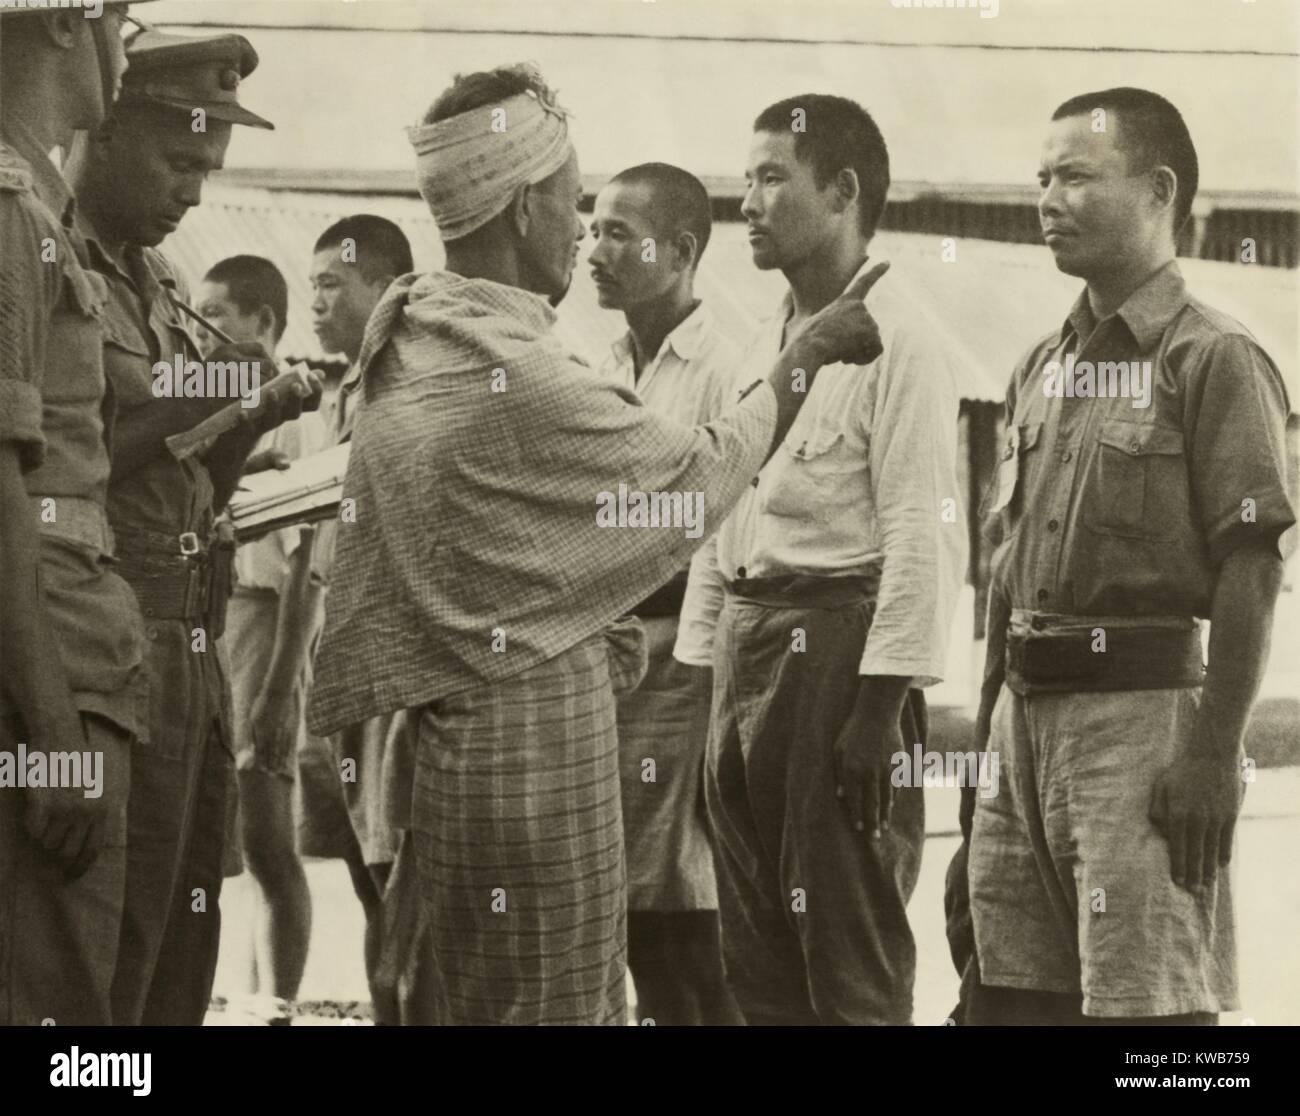 Vorwurf eines Burmesischen zivile aus Kalagon, wo japanische Truppen 637 Dorfbewohner niedergemetzelt. Der 7. Juli 1945 Atrocity von der japanischen kaiserlichen Armee Kempeitai, militärischen oder polizeilichen war Vergeltung für das Dorf Unterstützung der Alliierten Spezialeinheiten in der Gegend. Der 350 beteiligten Kempeitai, 14 wurden als Kriegsverbrecher in Rangun, Birma, im März 1946 versuchte. Weltkrieg 2. (BSLOC 2014 10 129) Stockfoto